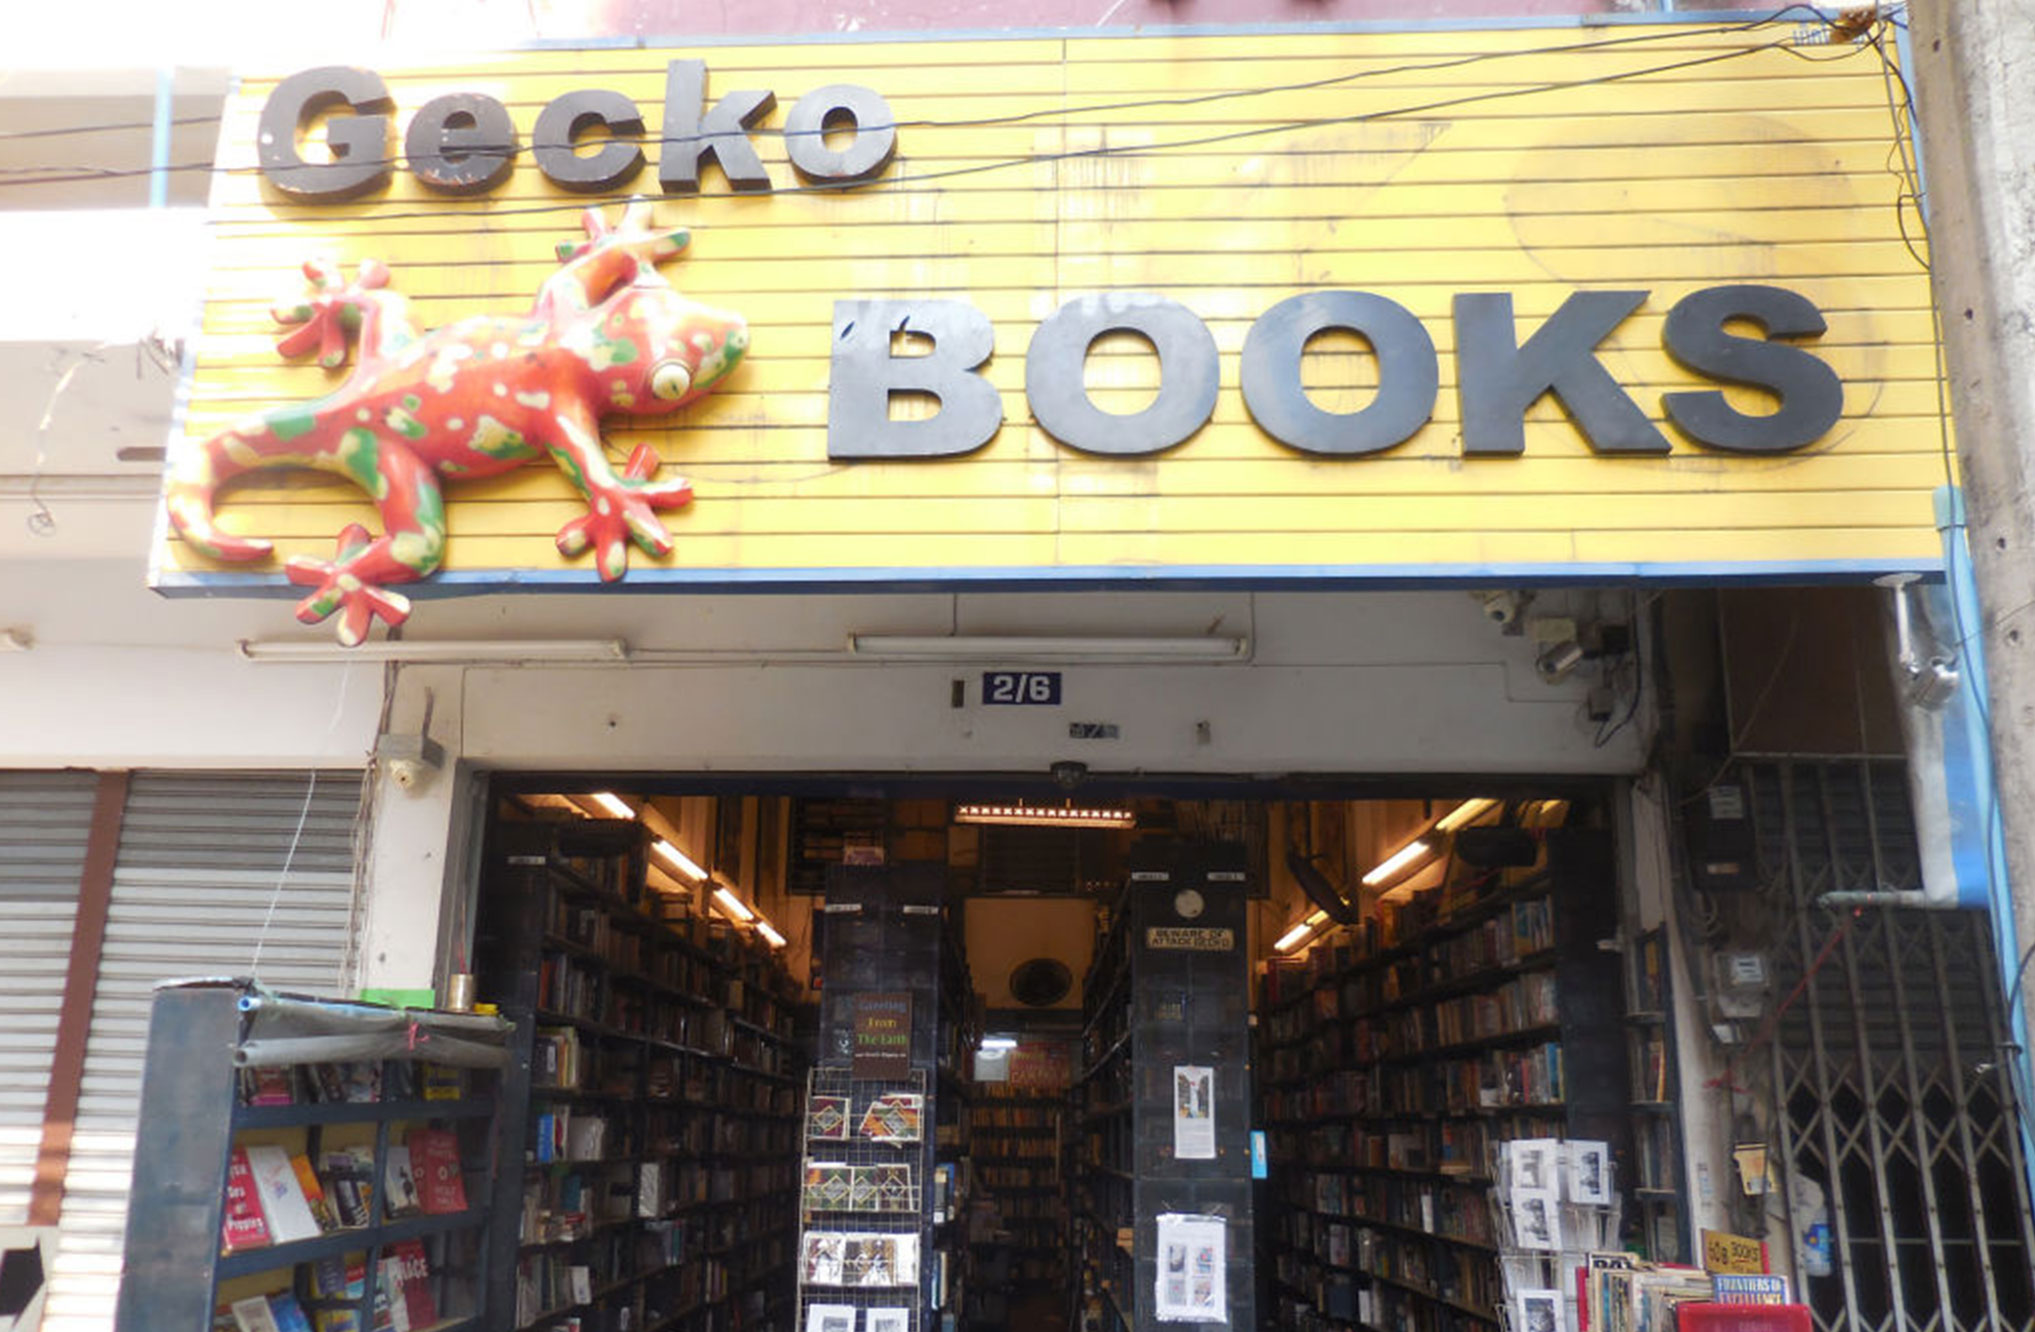 清迈集市Gecko Books